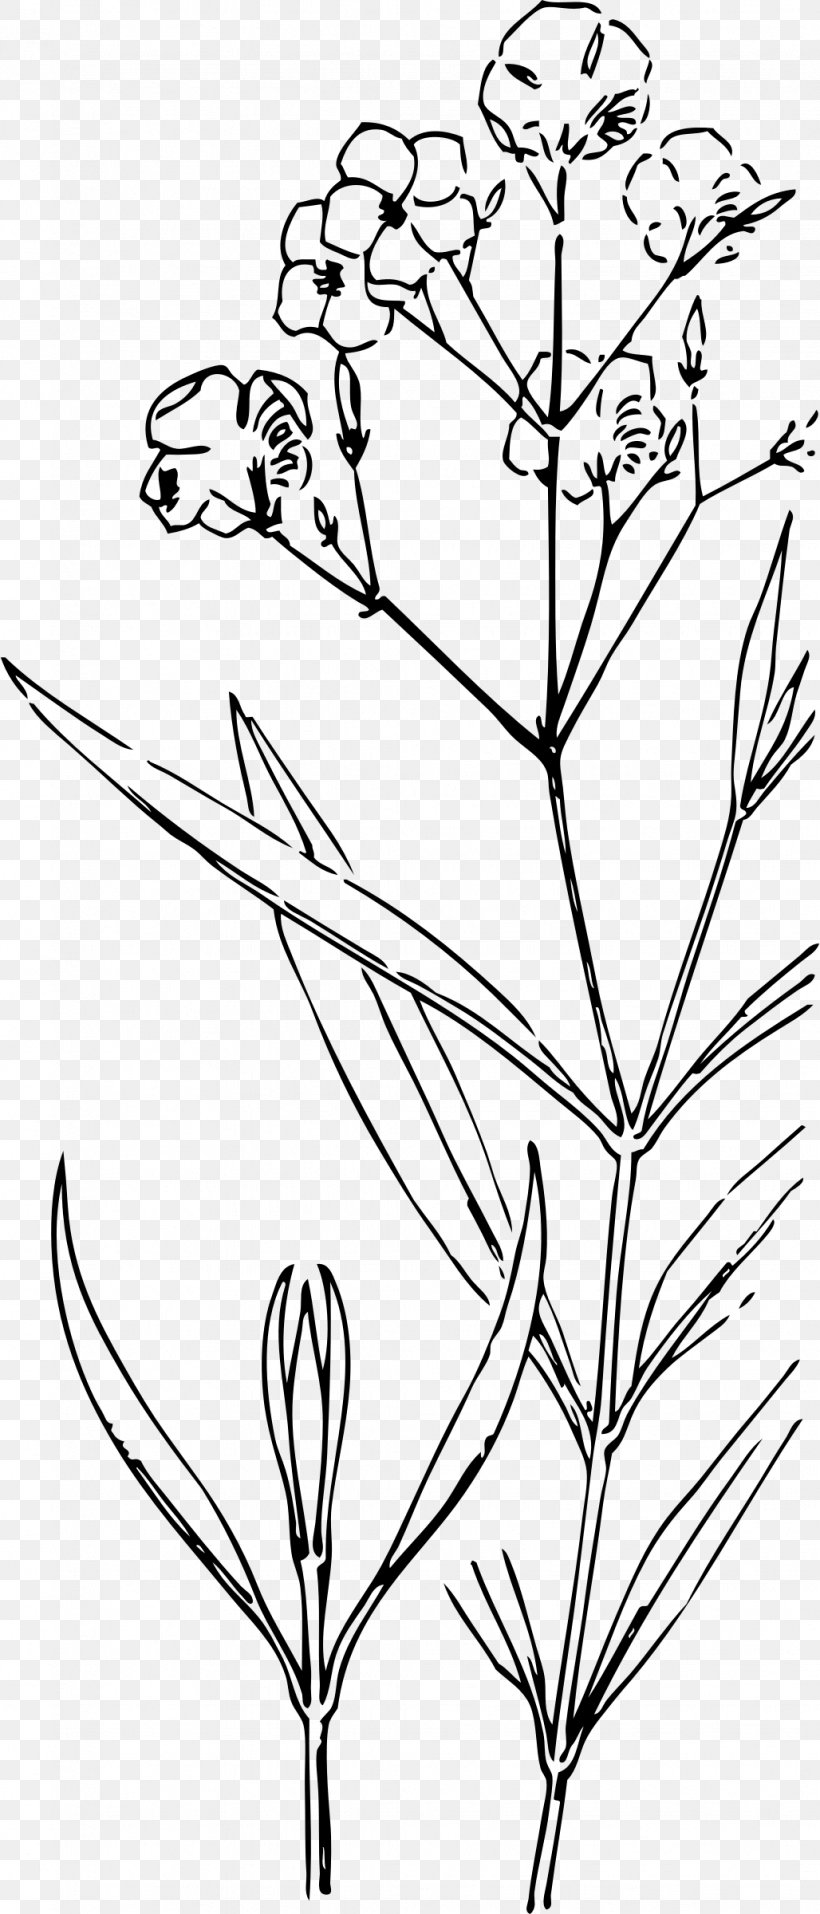 Nature Drawing And Design; Oleander Clip Art, PNG, 1028x2400px, Nature Drawing And Design, Art, Black And White, Botanical Illustration, Botany Download Free